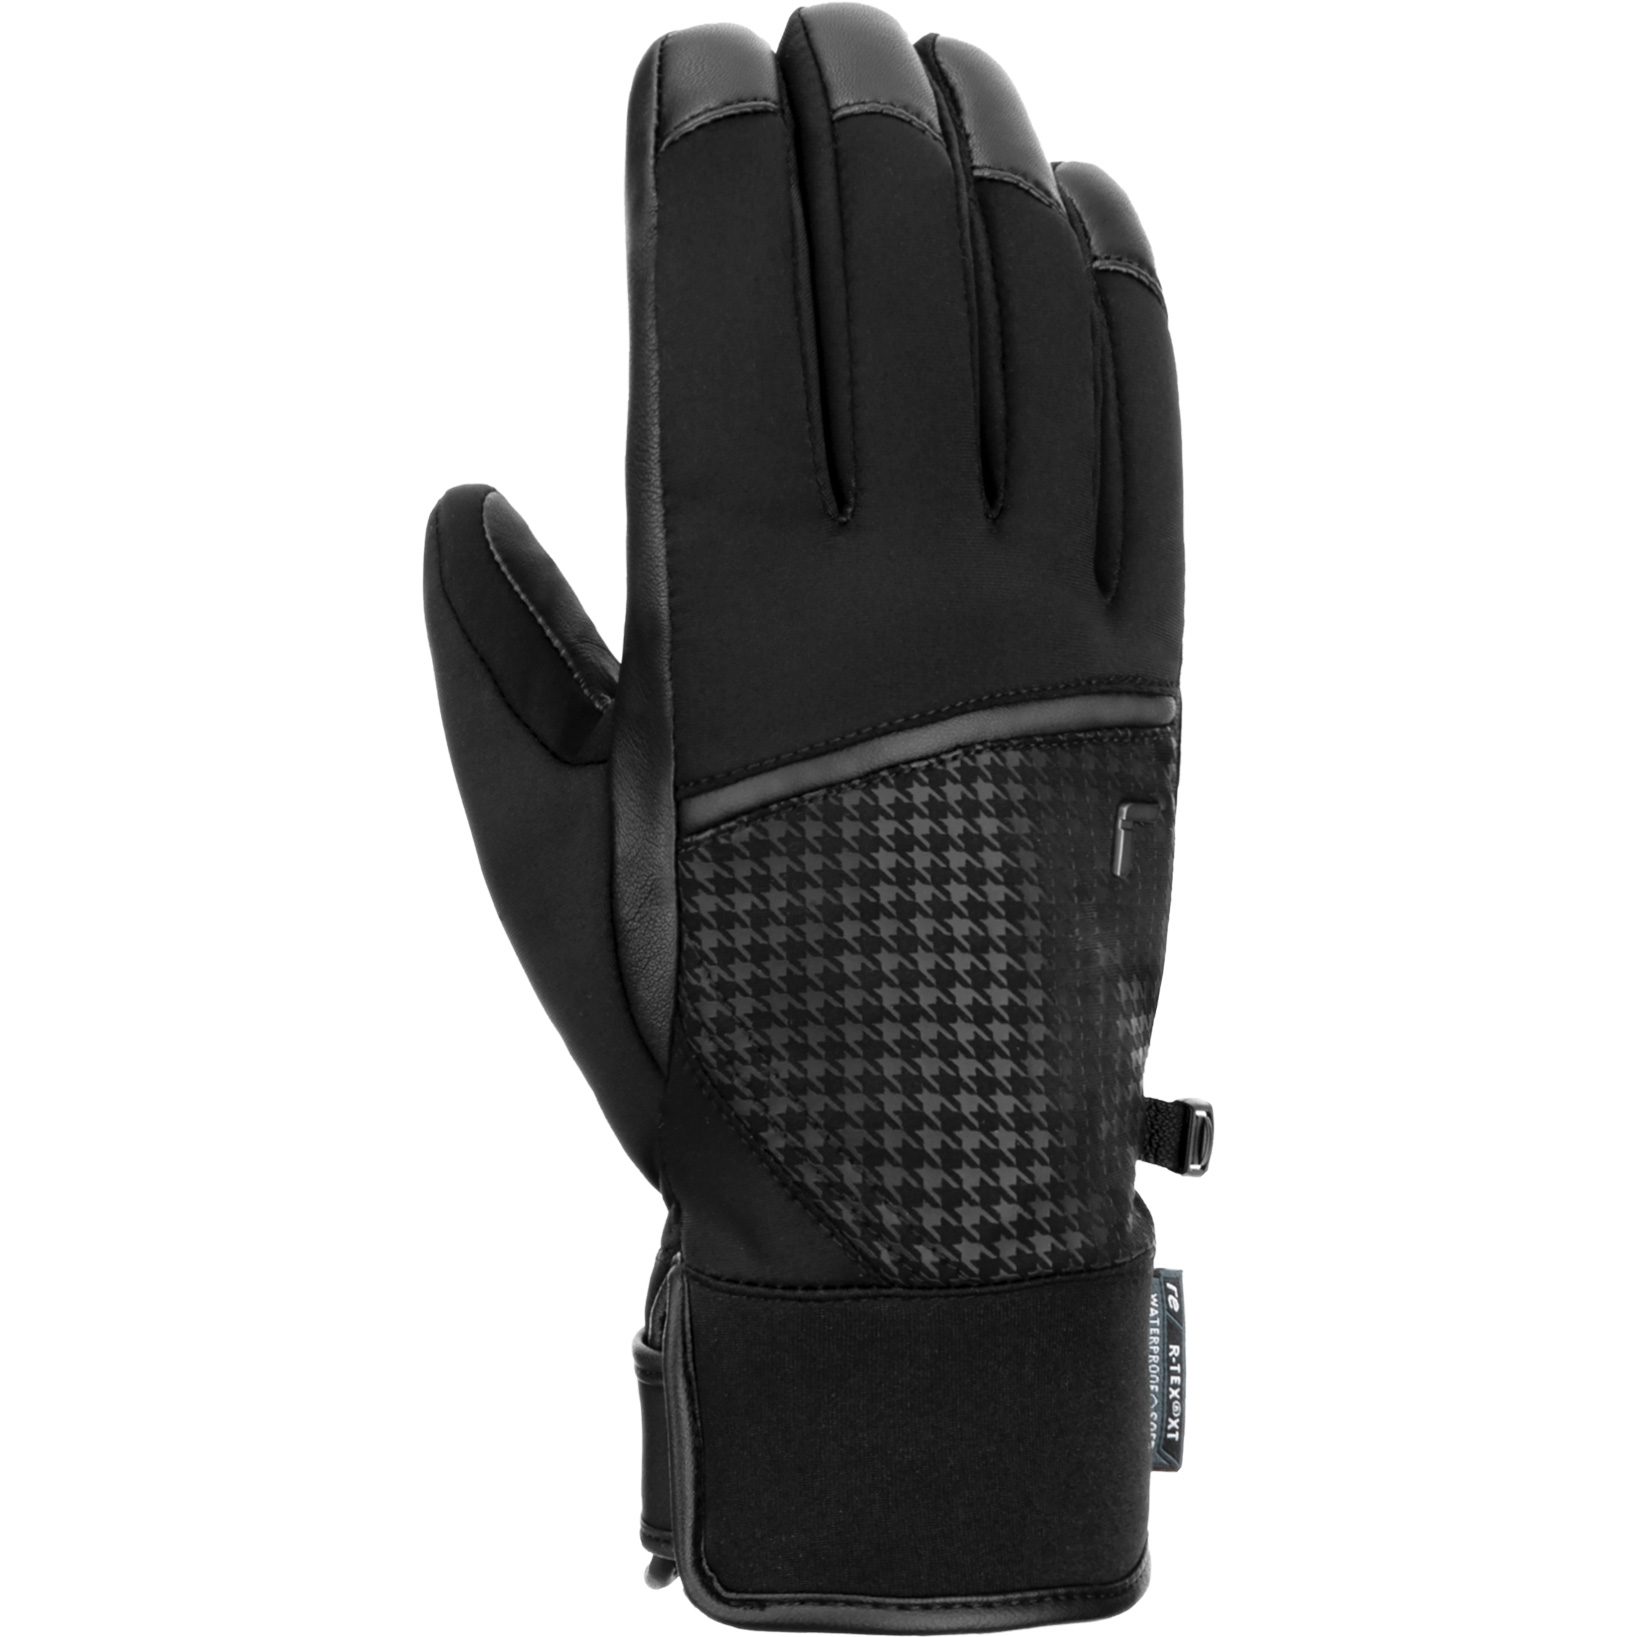 Reusch - Mara R-Tex® XT Handschuhe schwarz kaufen im Sport Bittl Shop